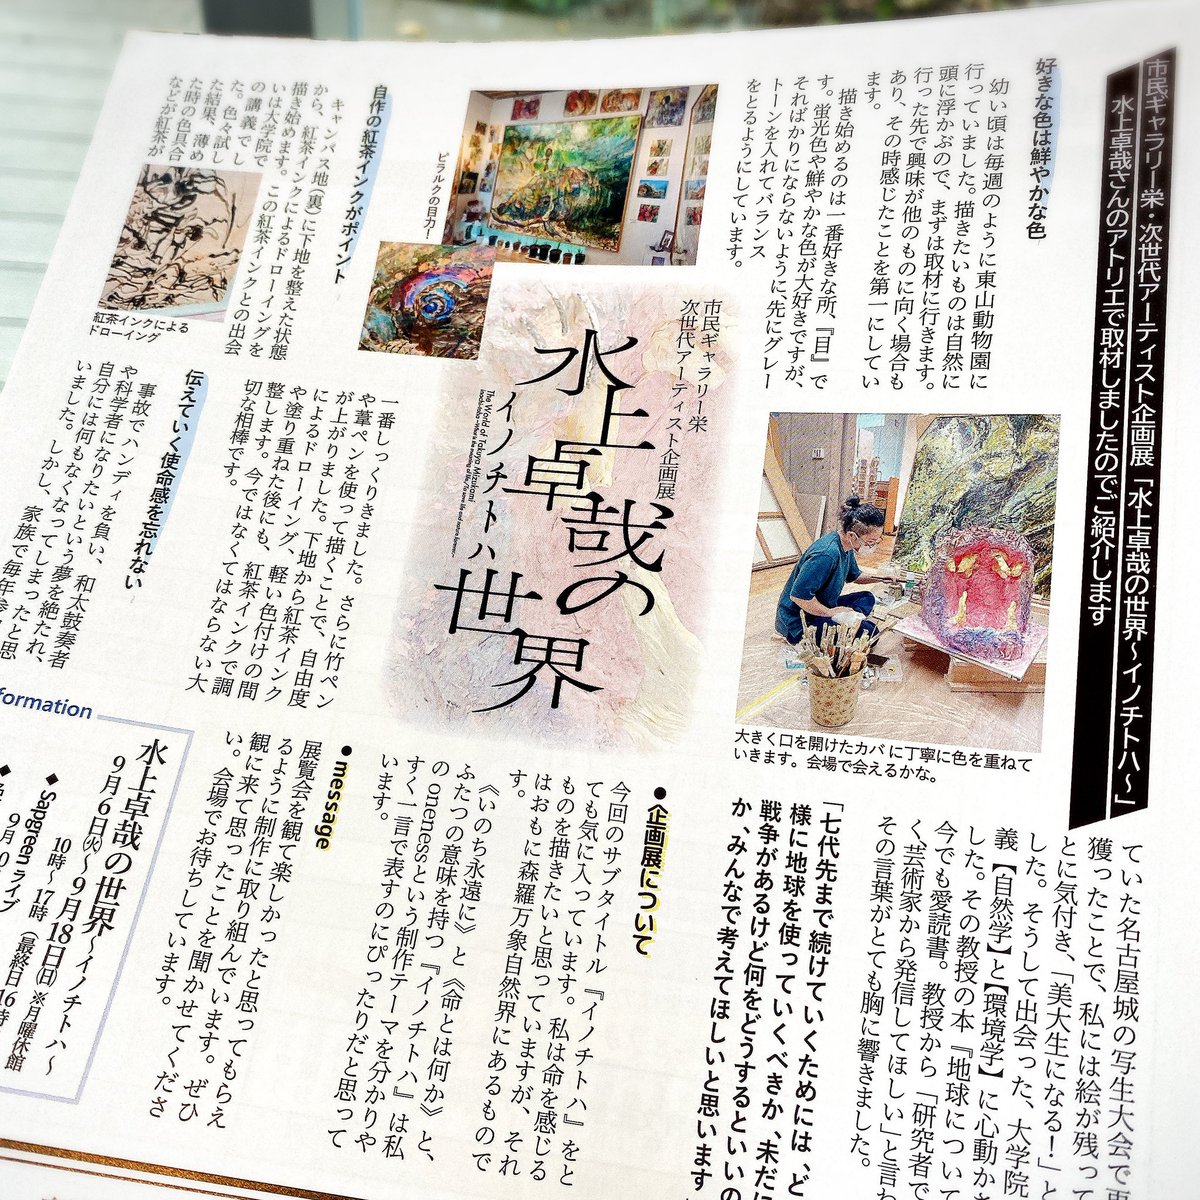 デザイン展を見に行った名古屋造形大学で、水上卓哉さんの記事が載ってる市民ギャラリー栄さんの「&Art」発見して喜び☺️

名古屋の皆さま、ぜひ手にお取りください。 